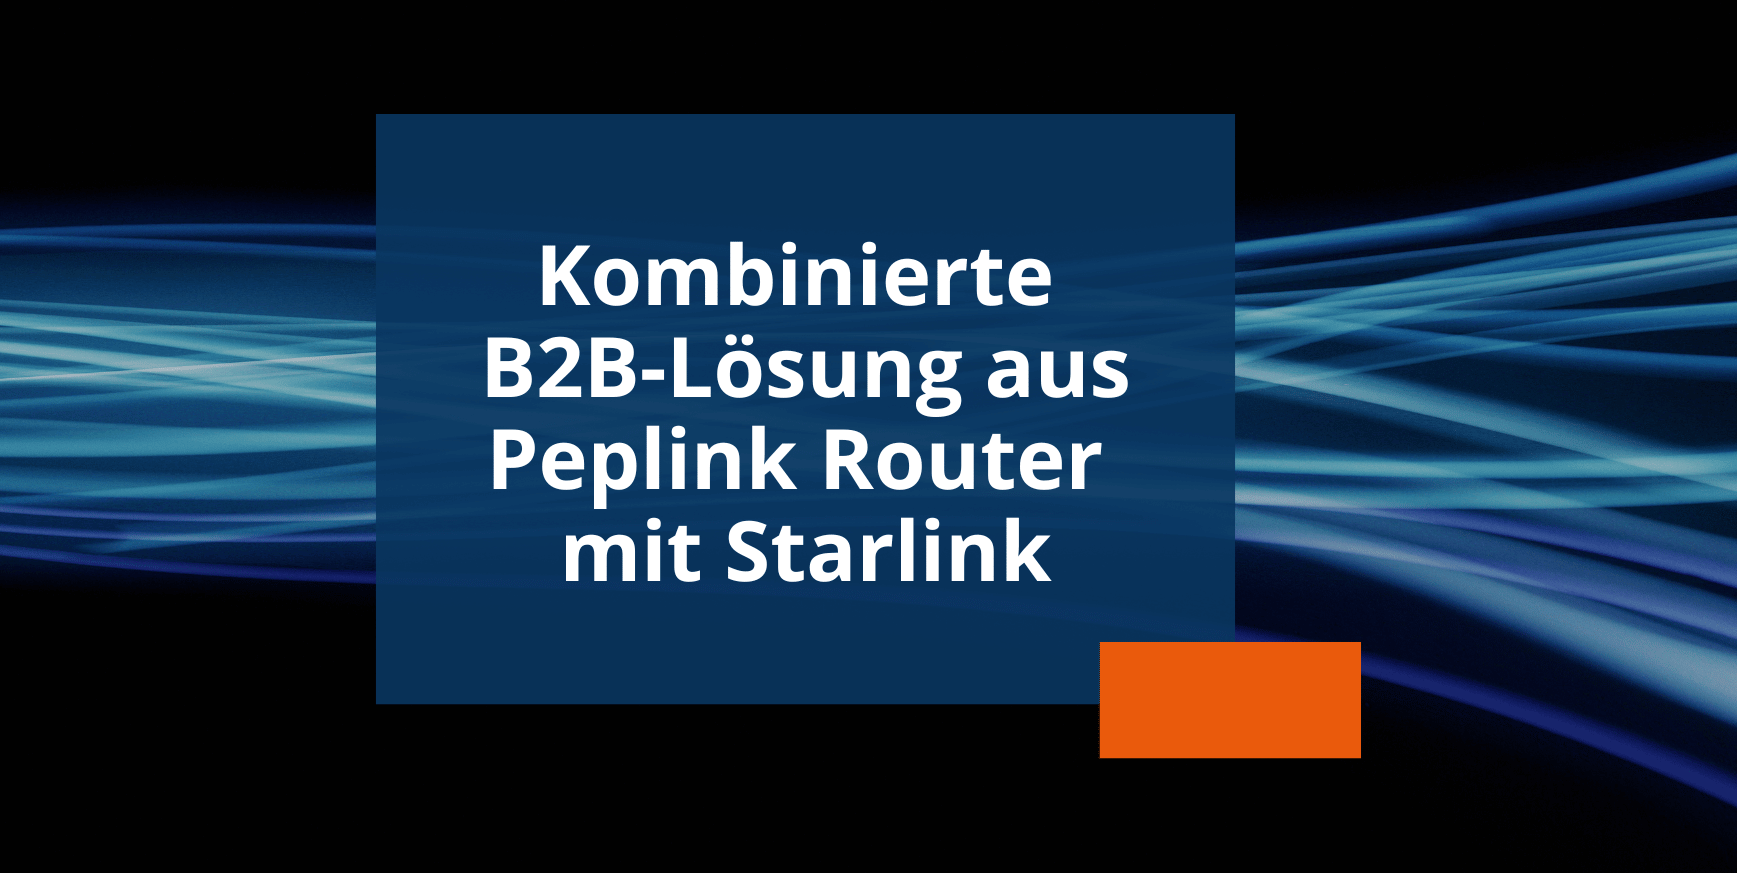 News kombinierte B2B-Lösung aus Peplink Router mit Starlink